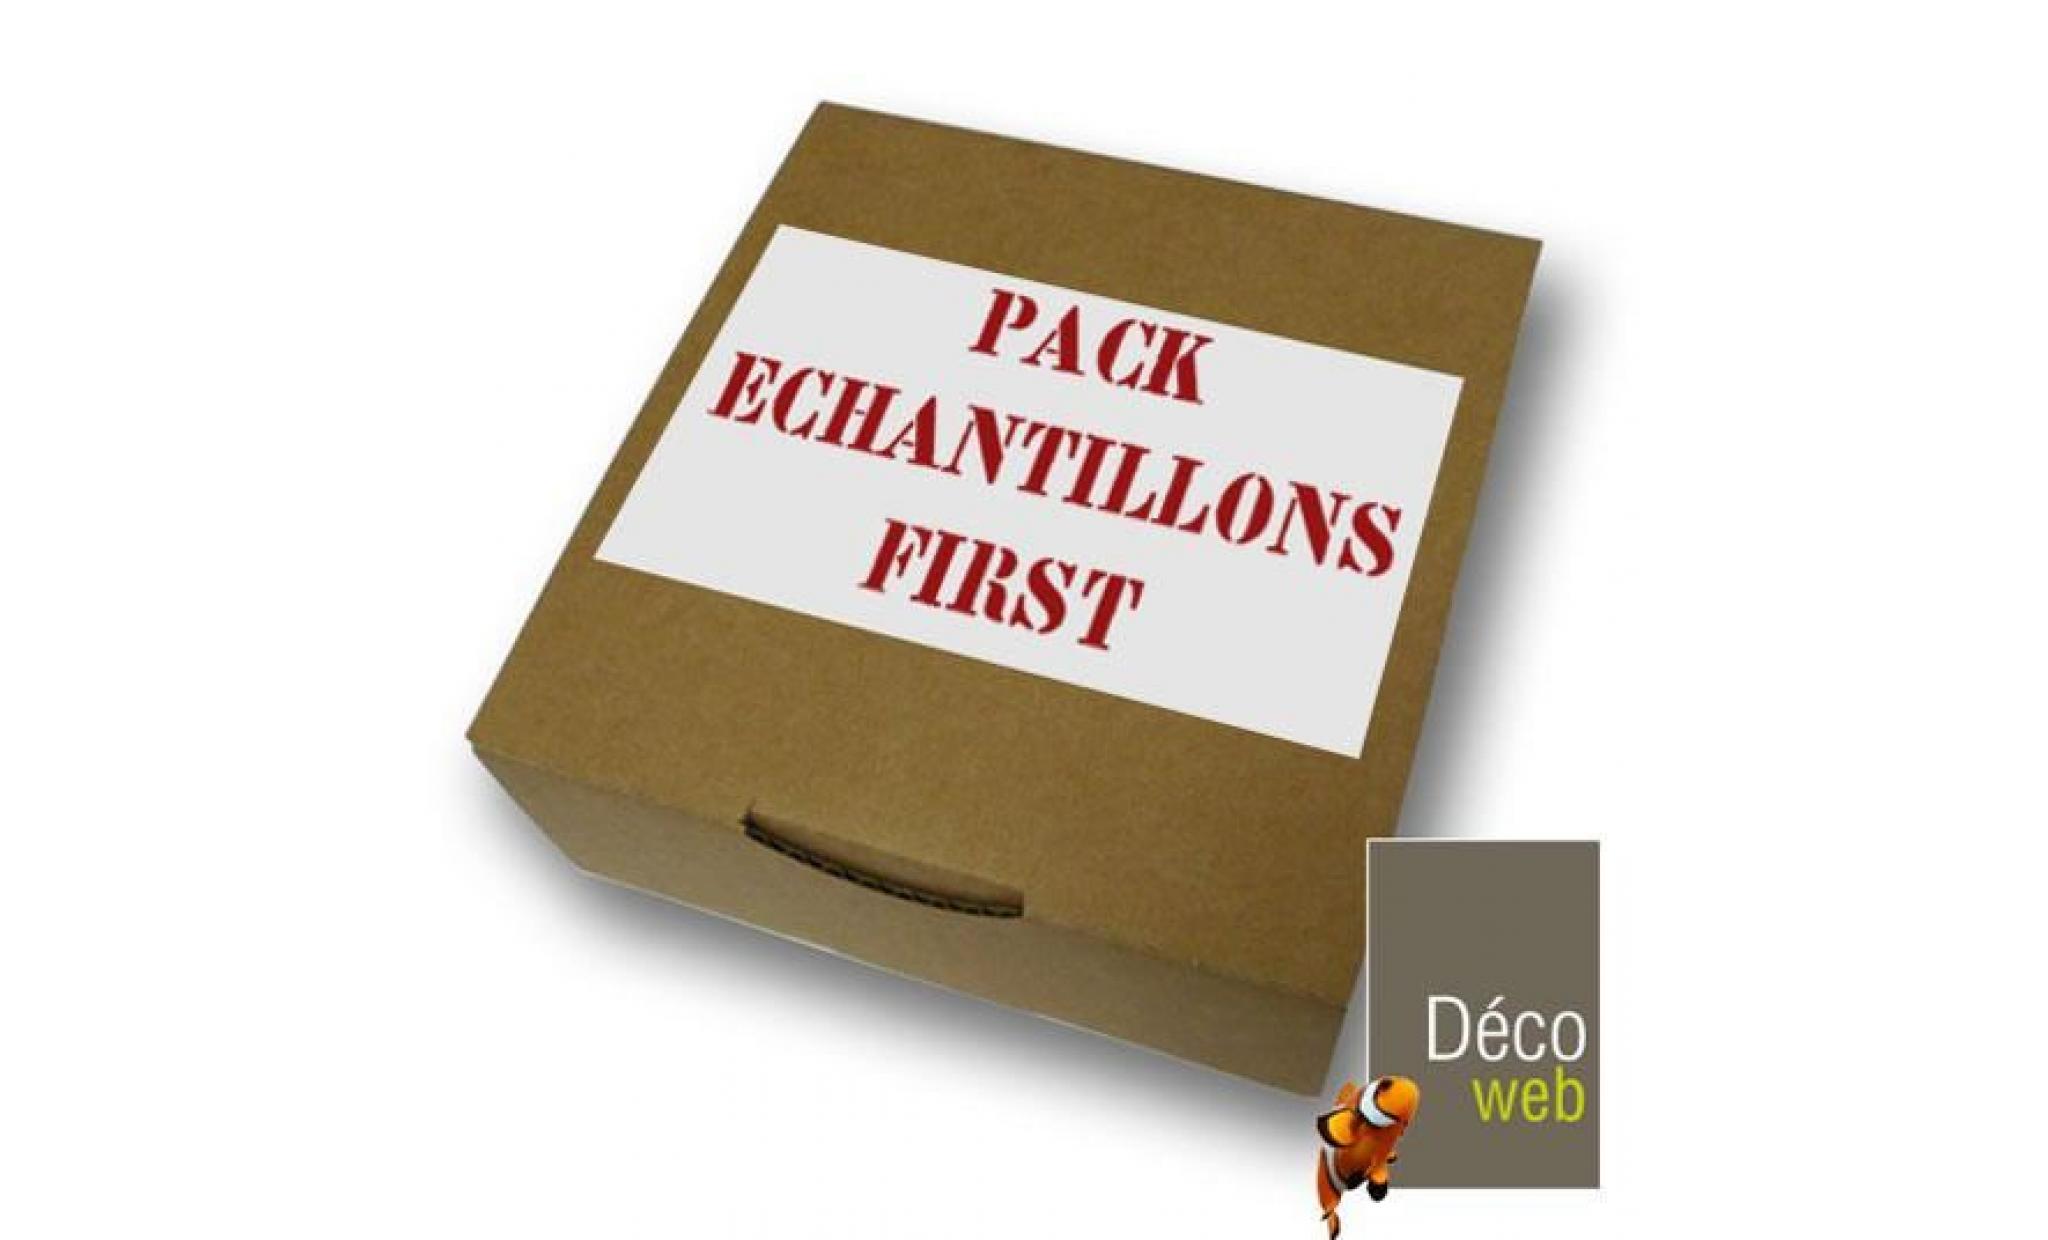 pack échantillons gazons artificiels first 